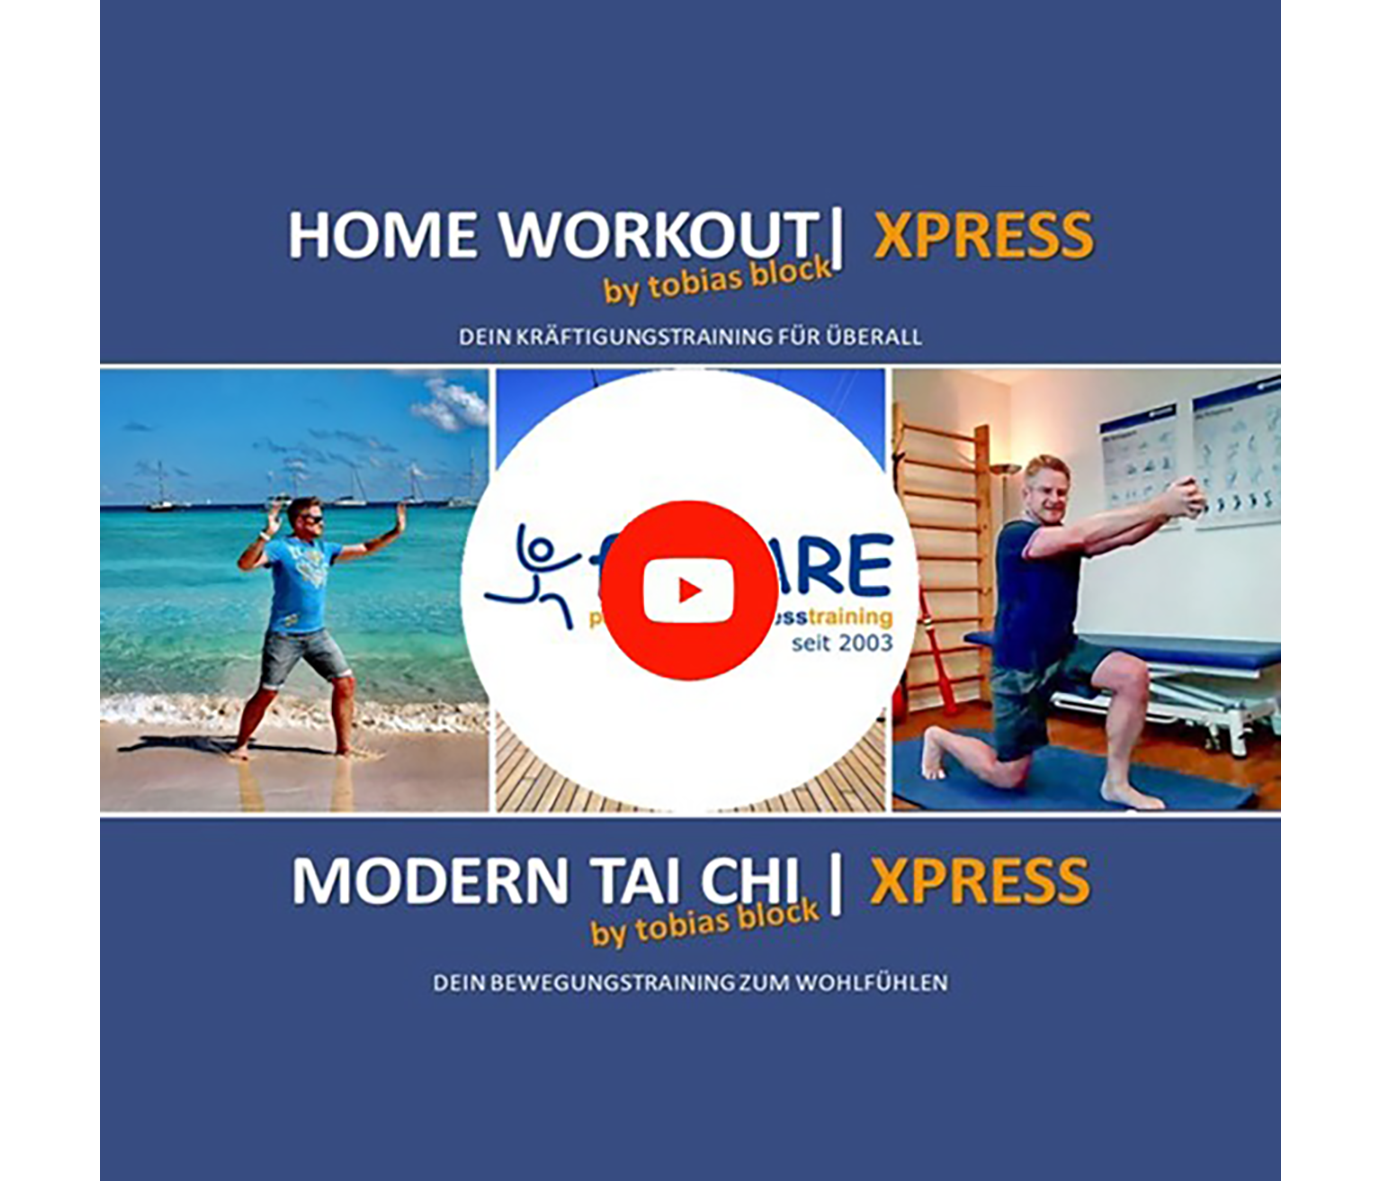 Home Workout Modern Tai Chi Express mit Tobias Block | Kurs Physioteam